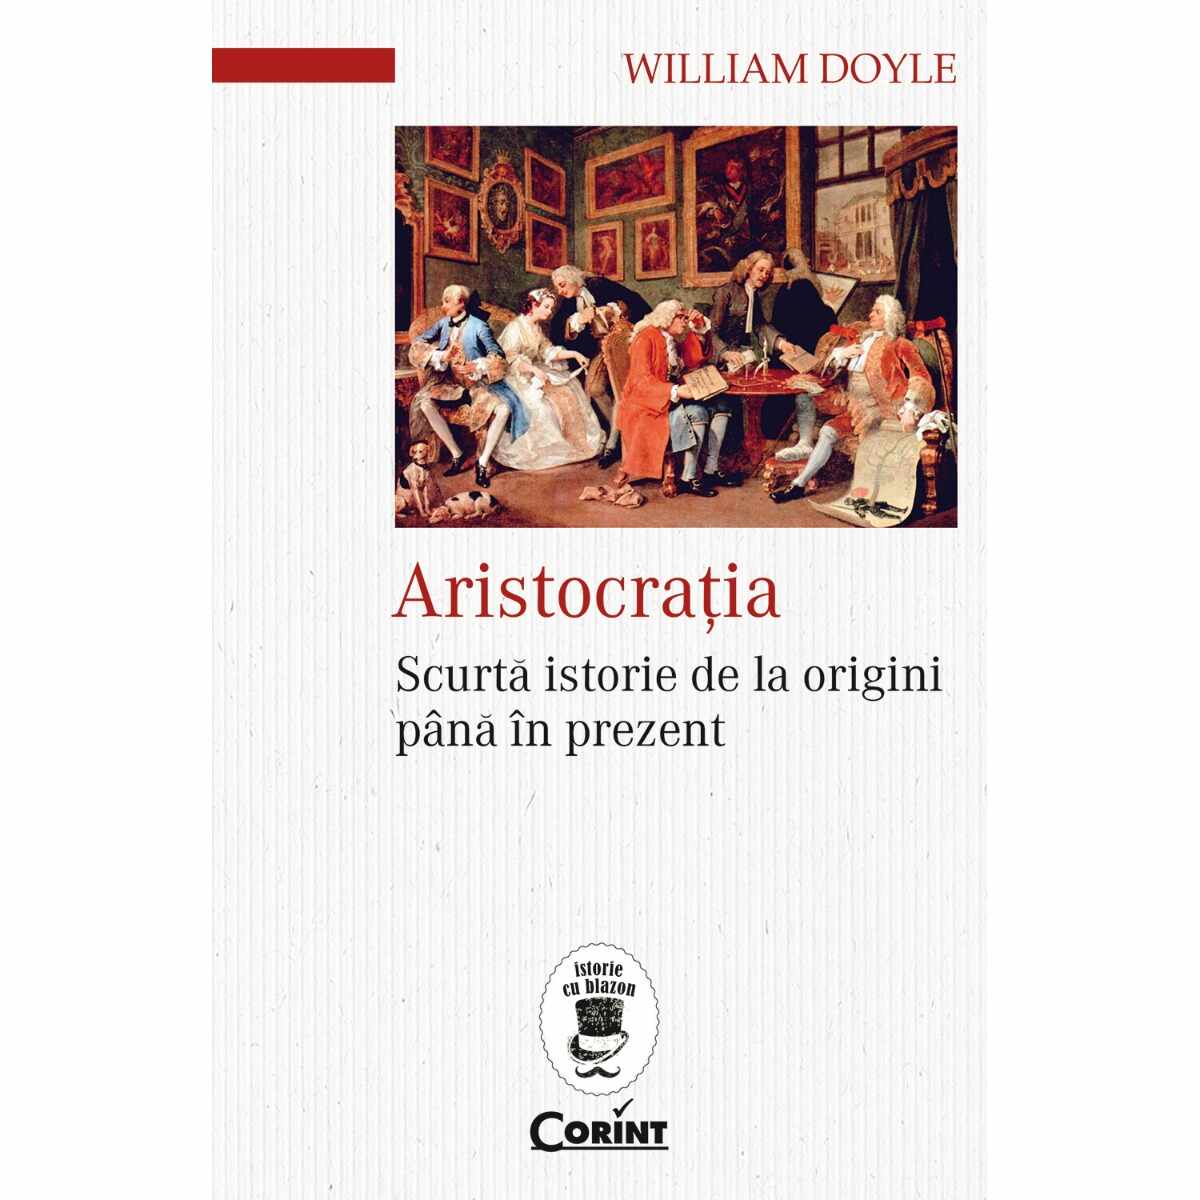 Carte Editura Corint, Aristocratia, William Doyle